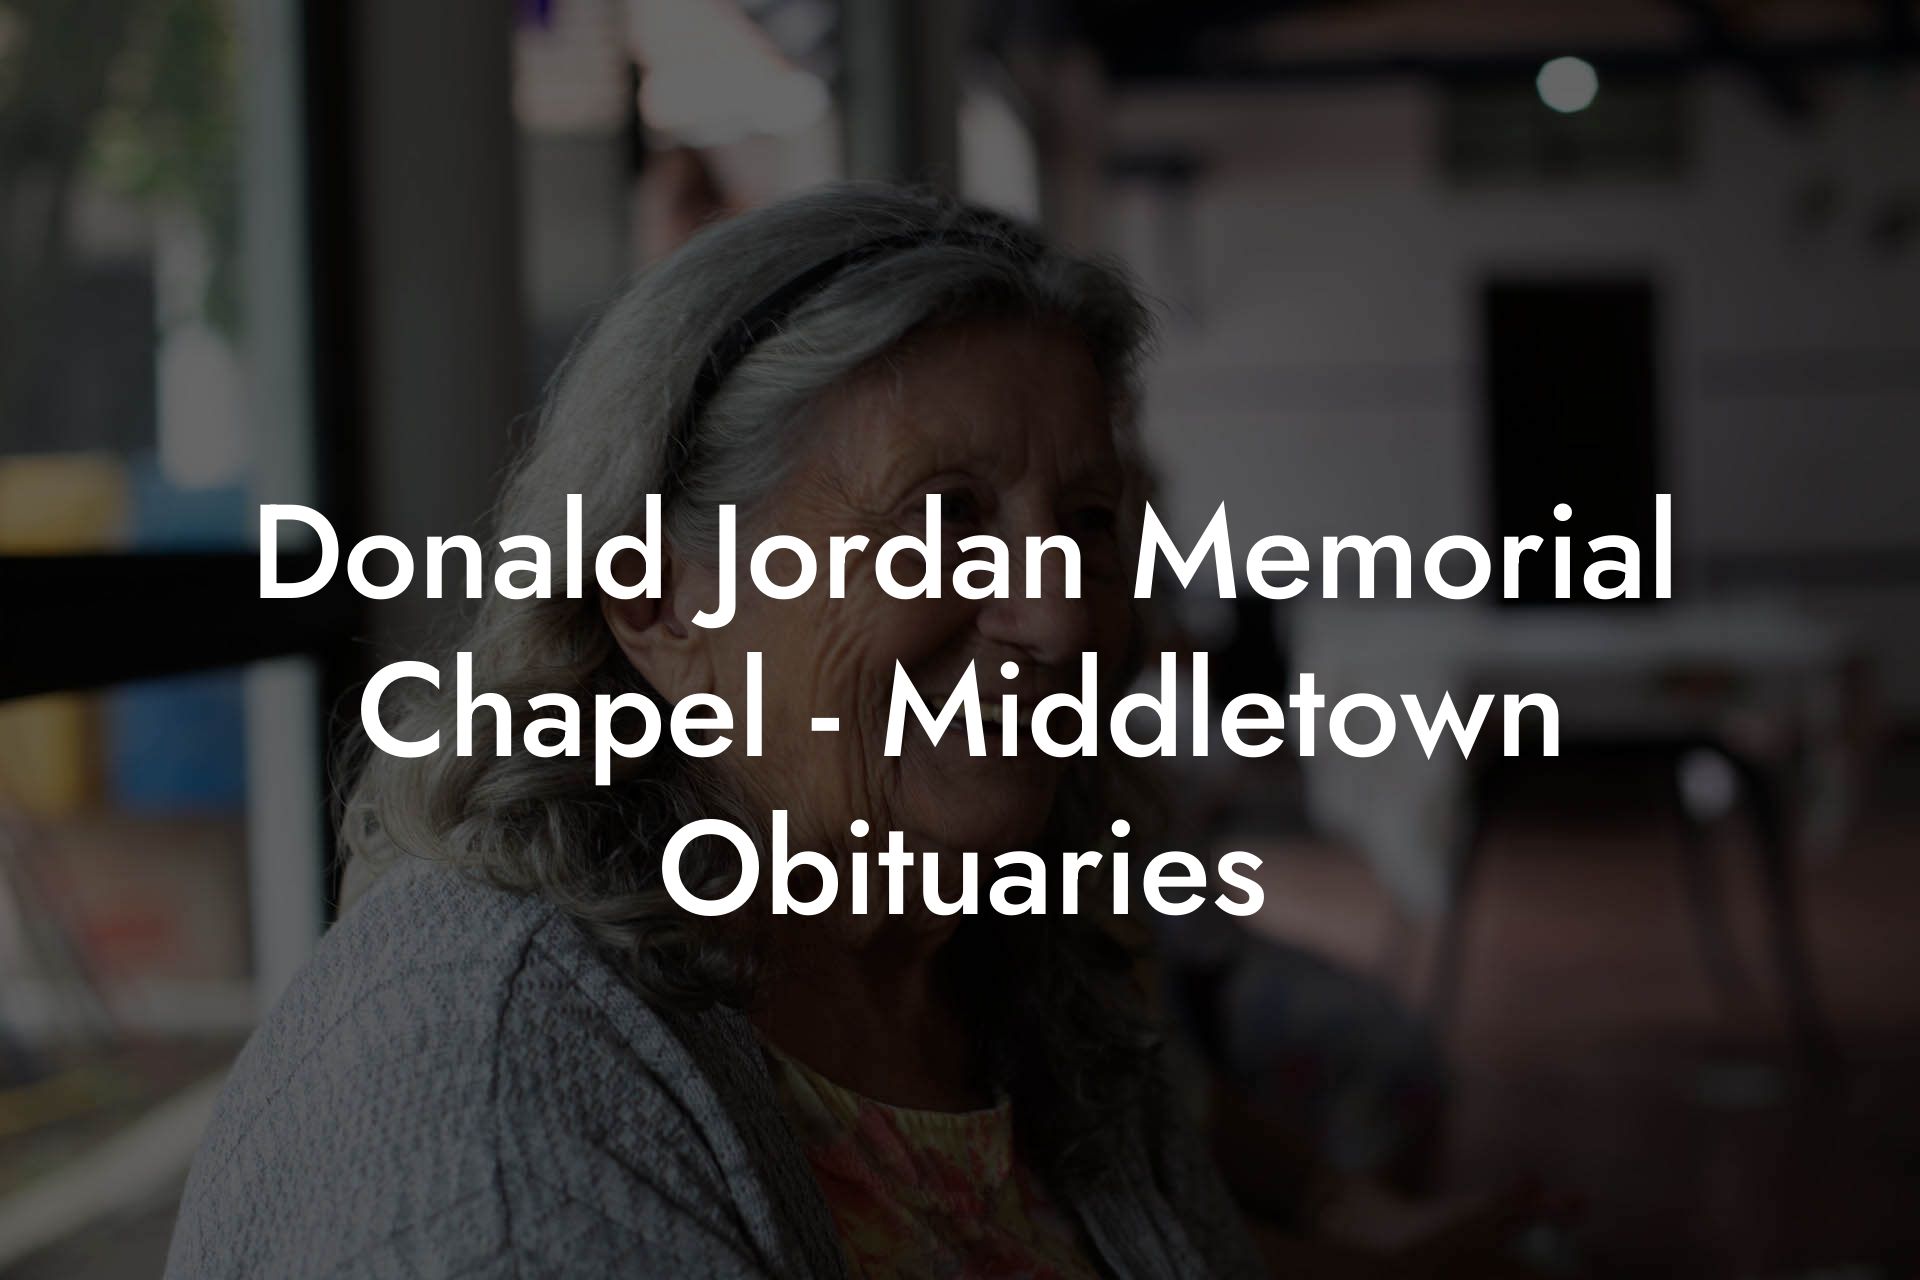 Donald Jordan Memorial Chapel - Middletown Obituaries